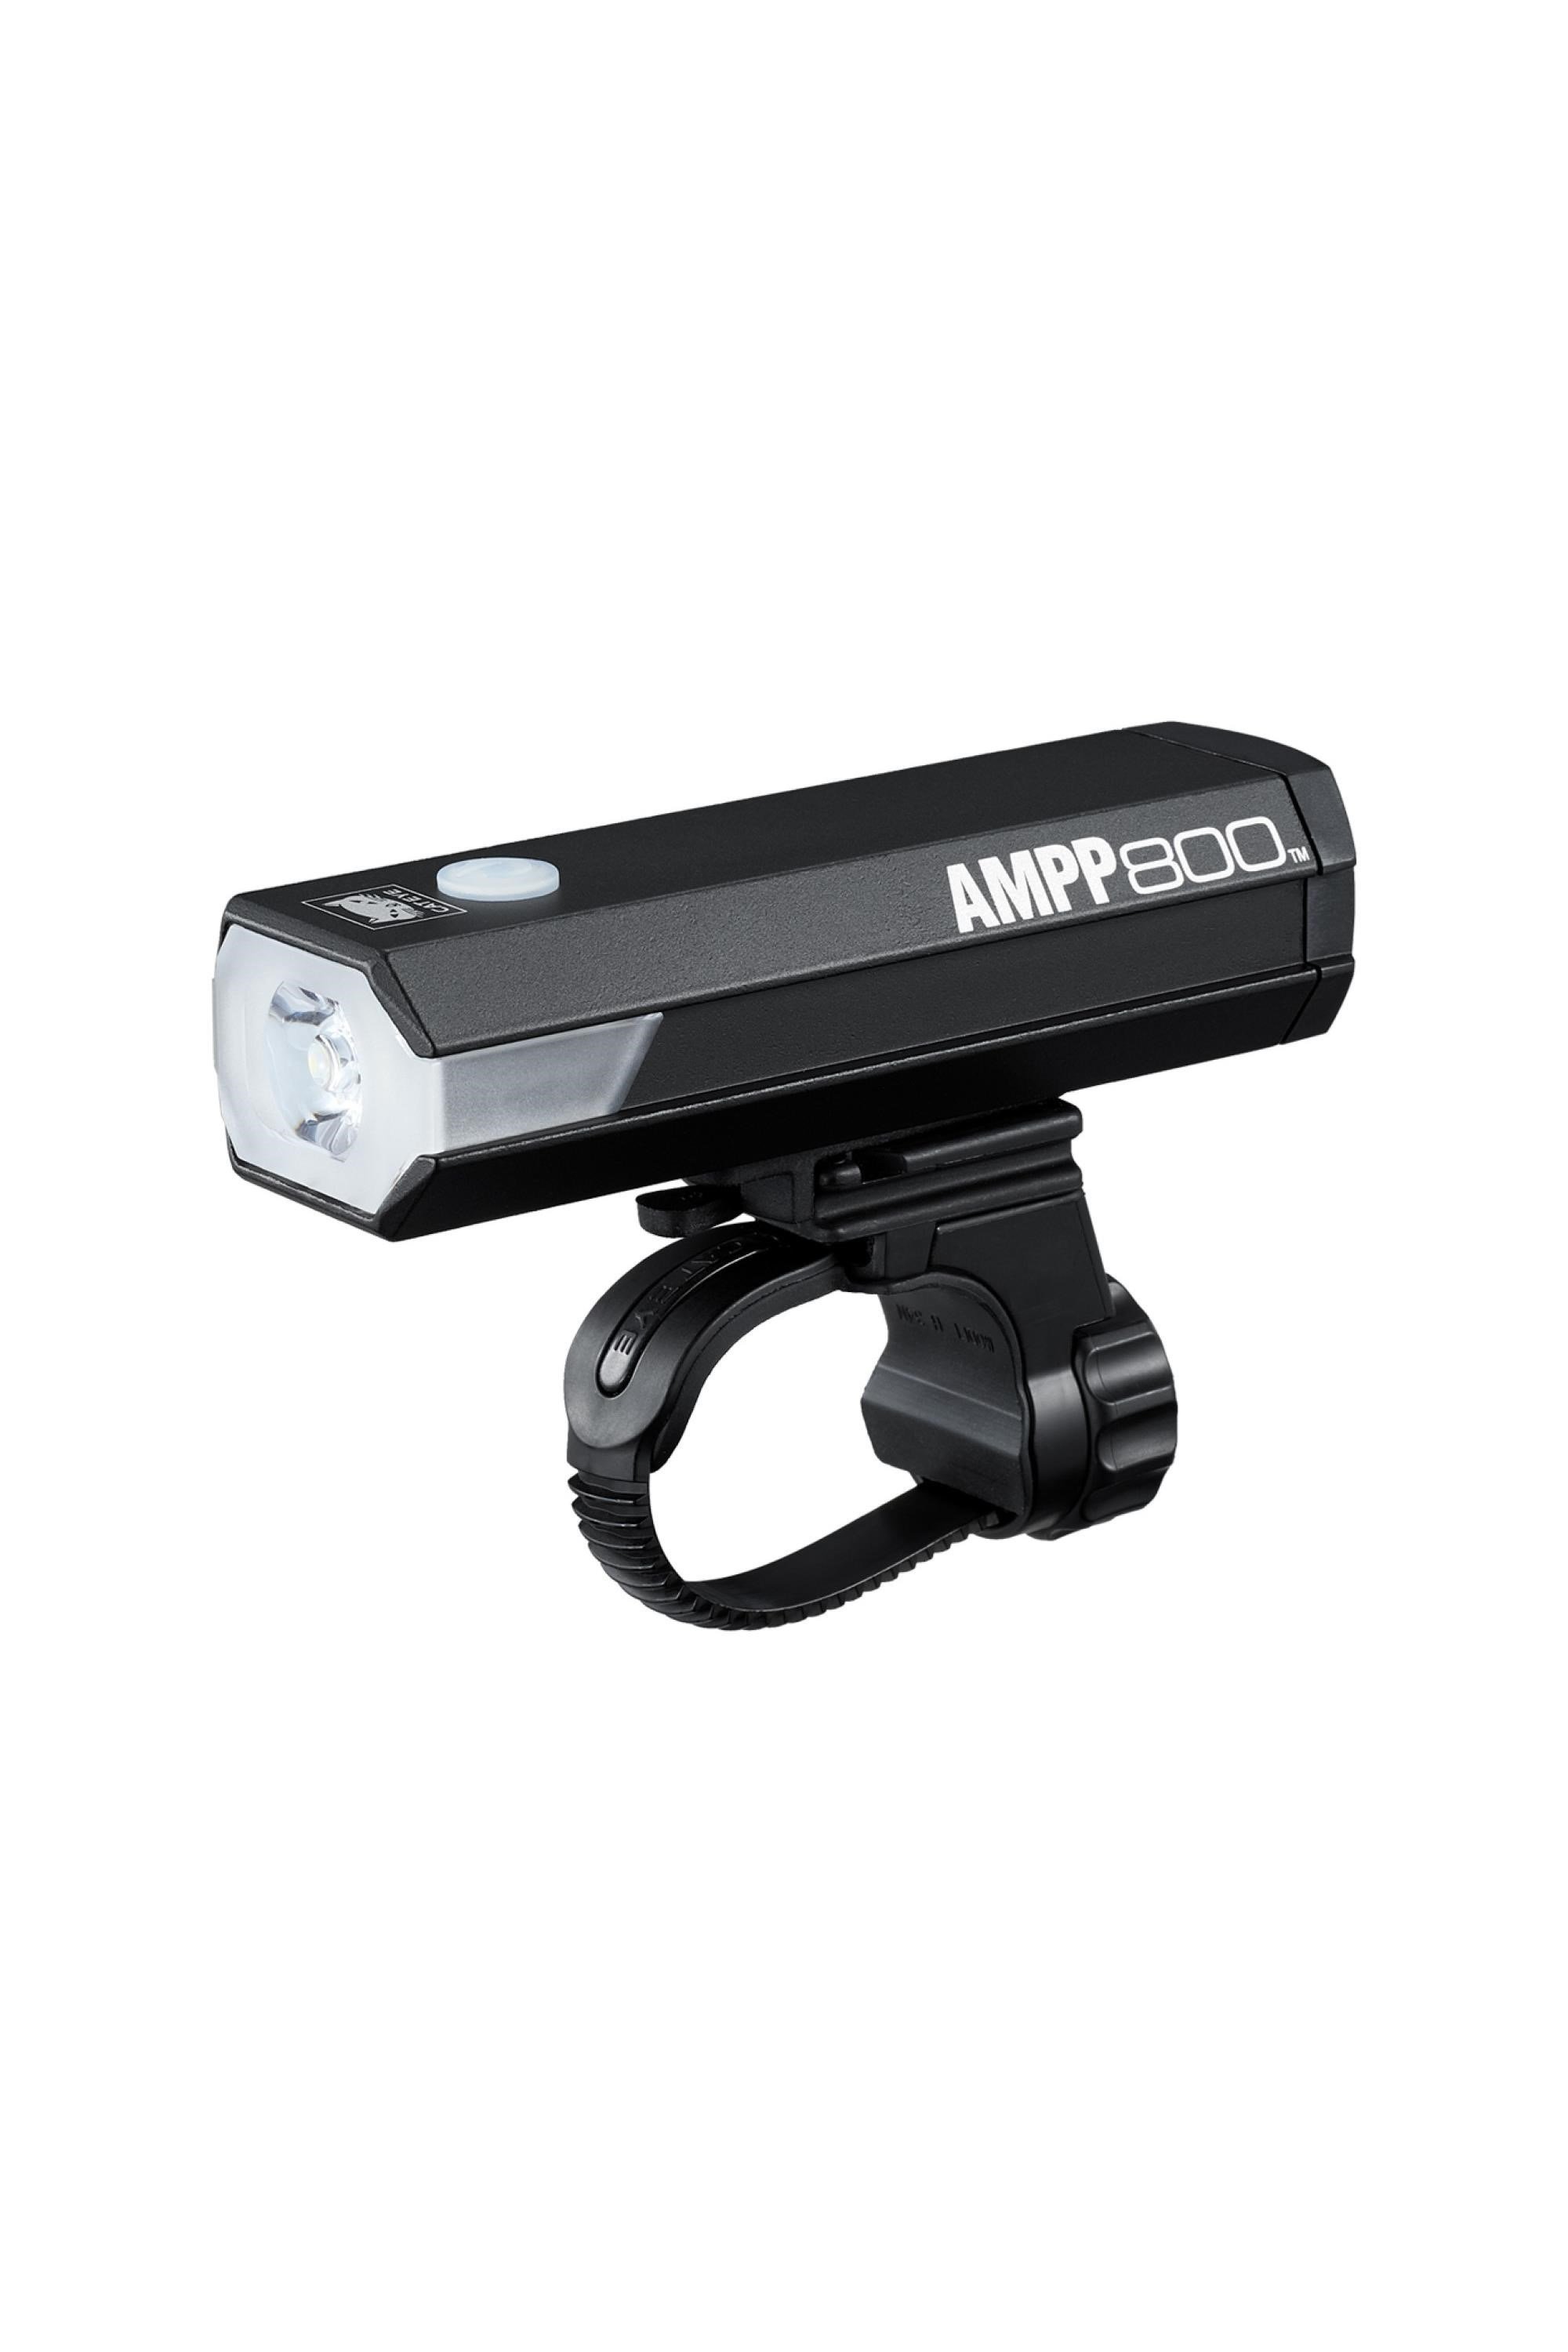 AMPP 800 Front Bike Light -